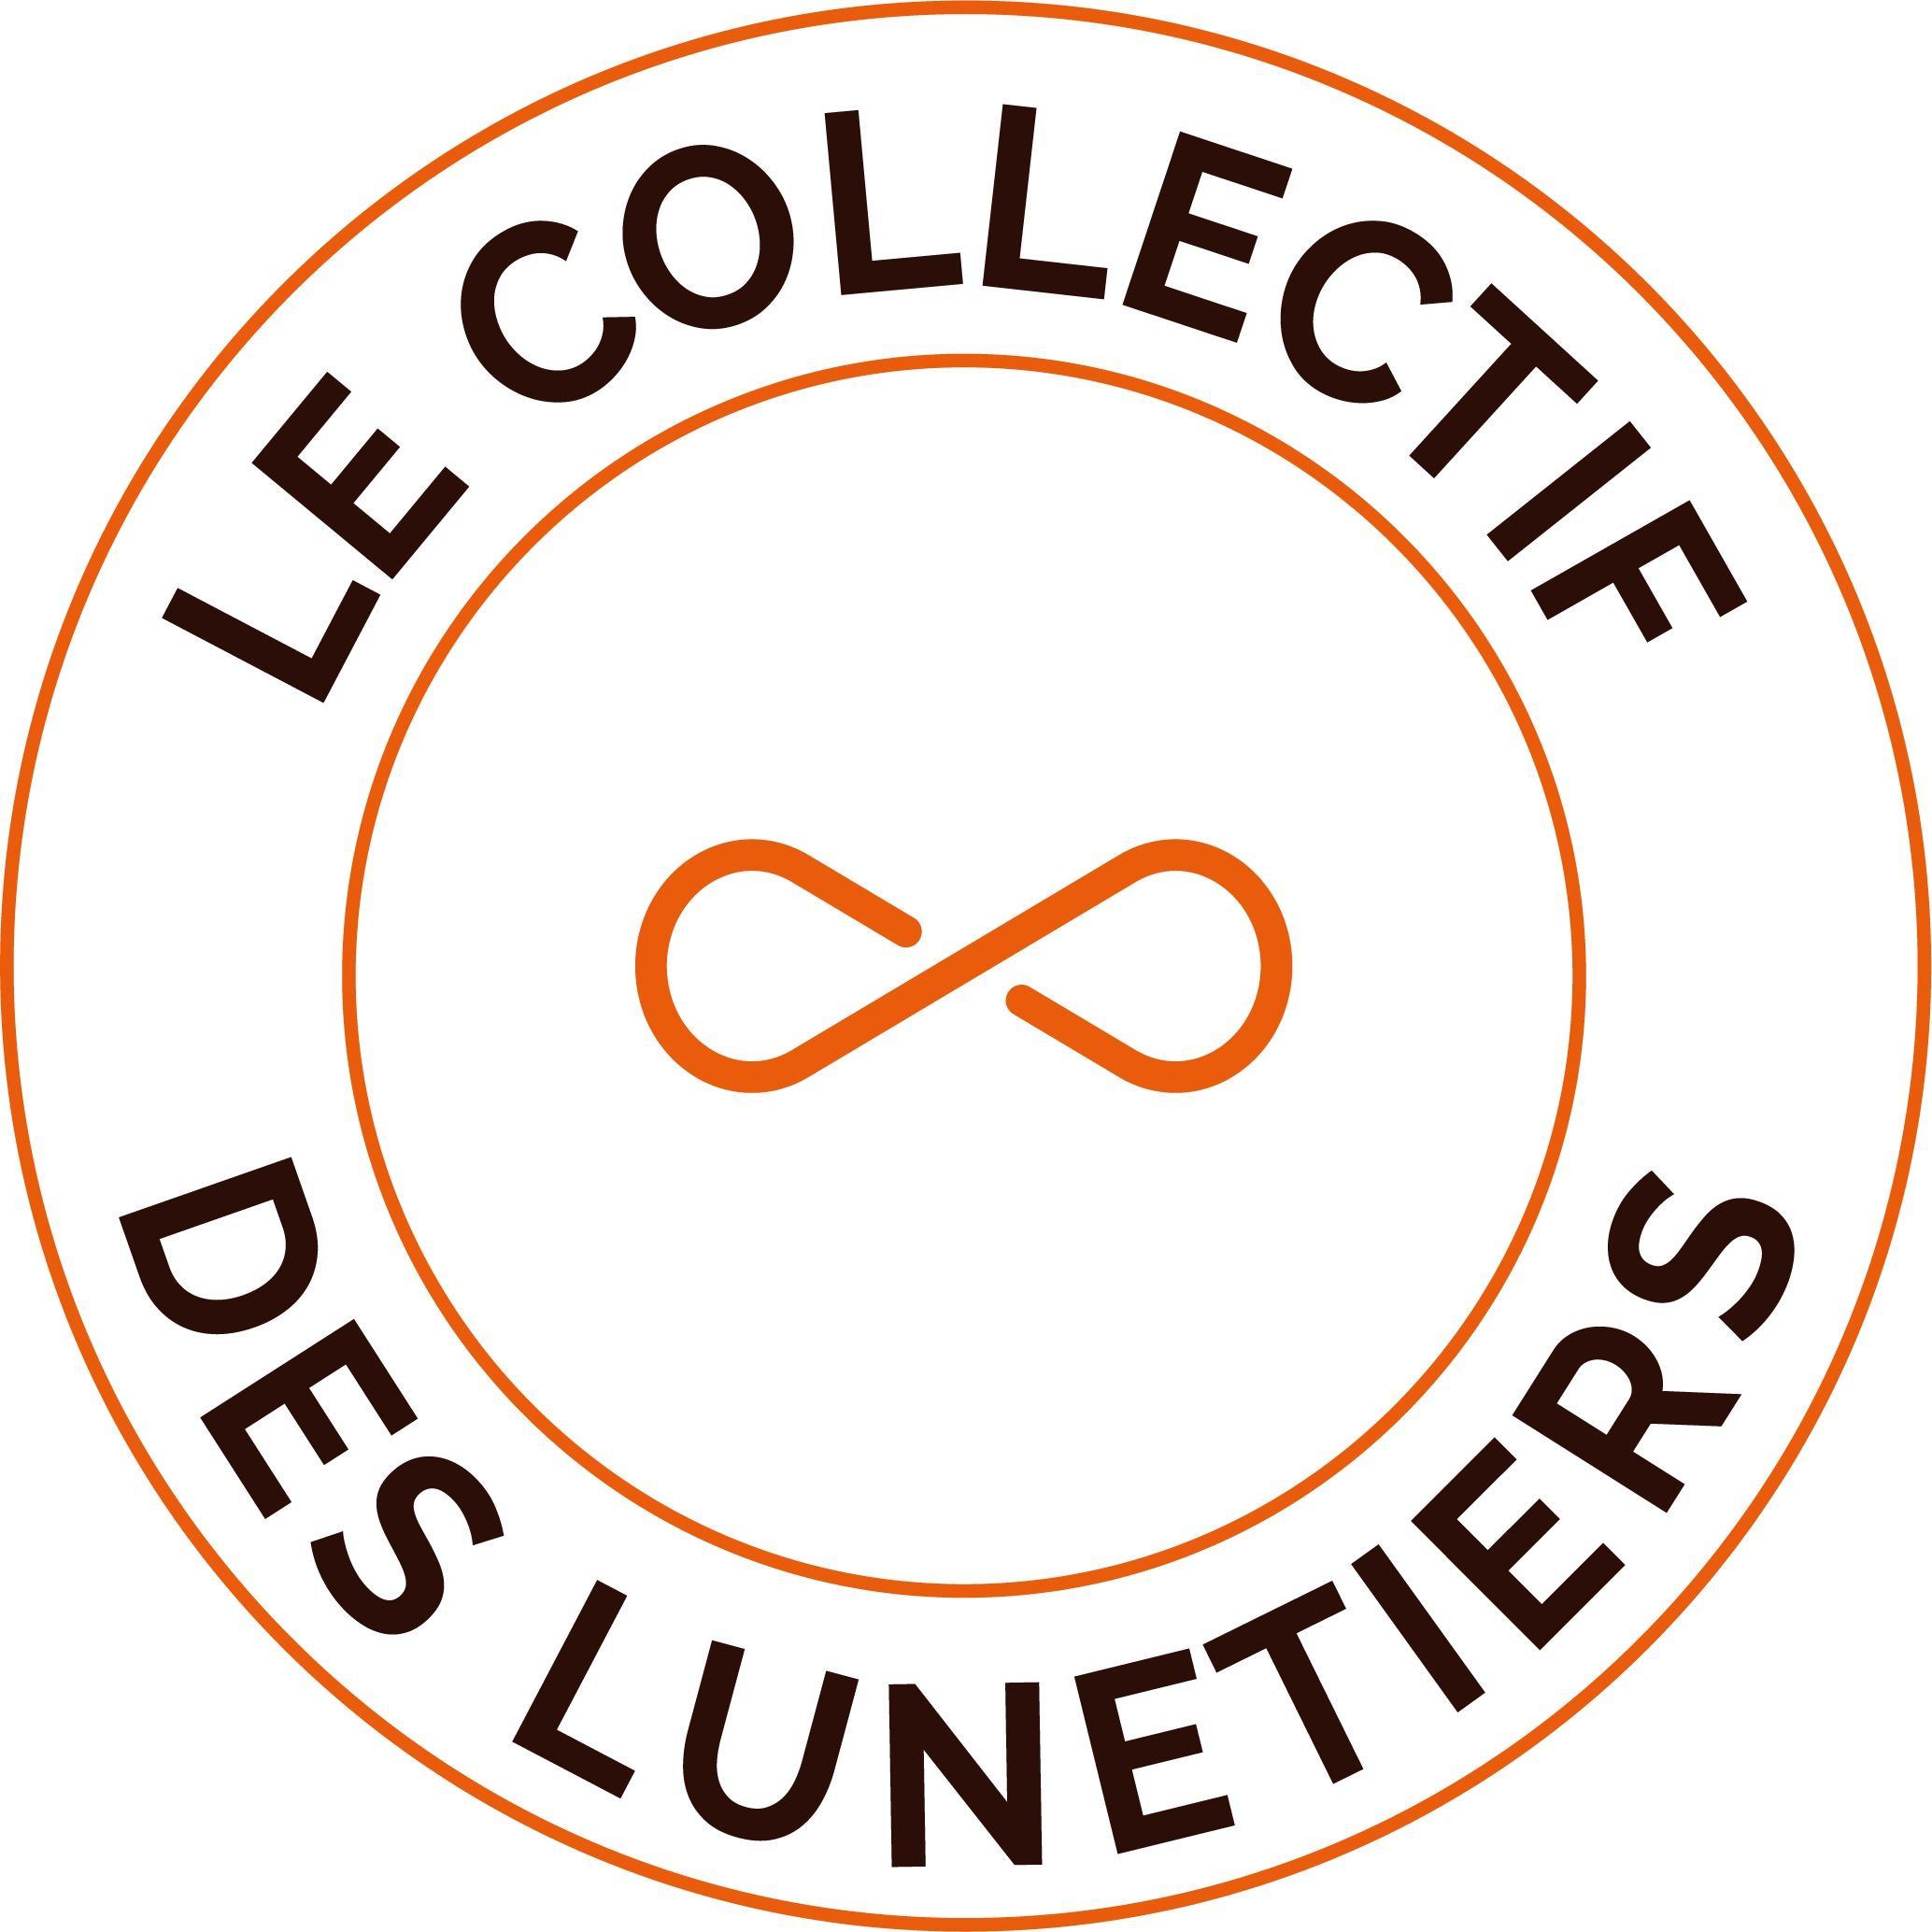 Le Collectif Des Lunetiers Thônes